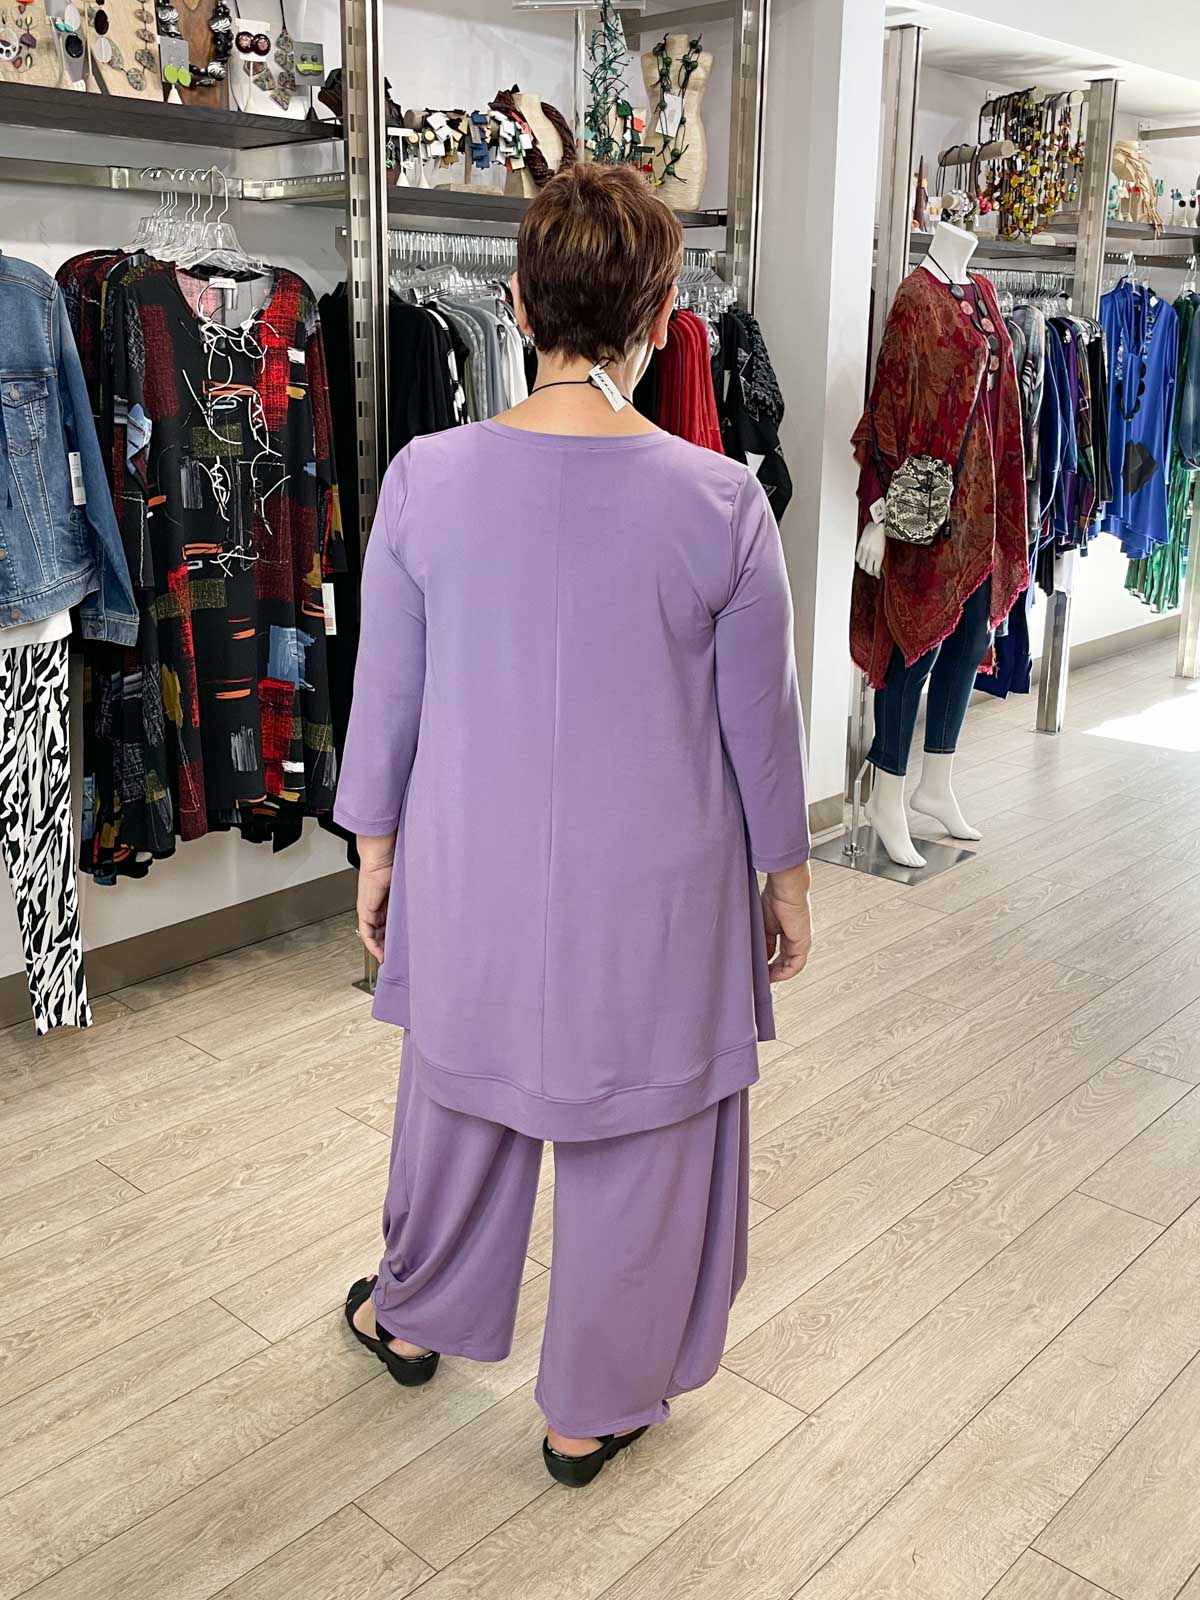 Kozan Dyson Top, Violette Vogue - Statement Boutique